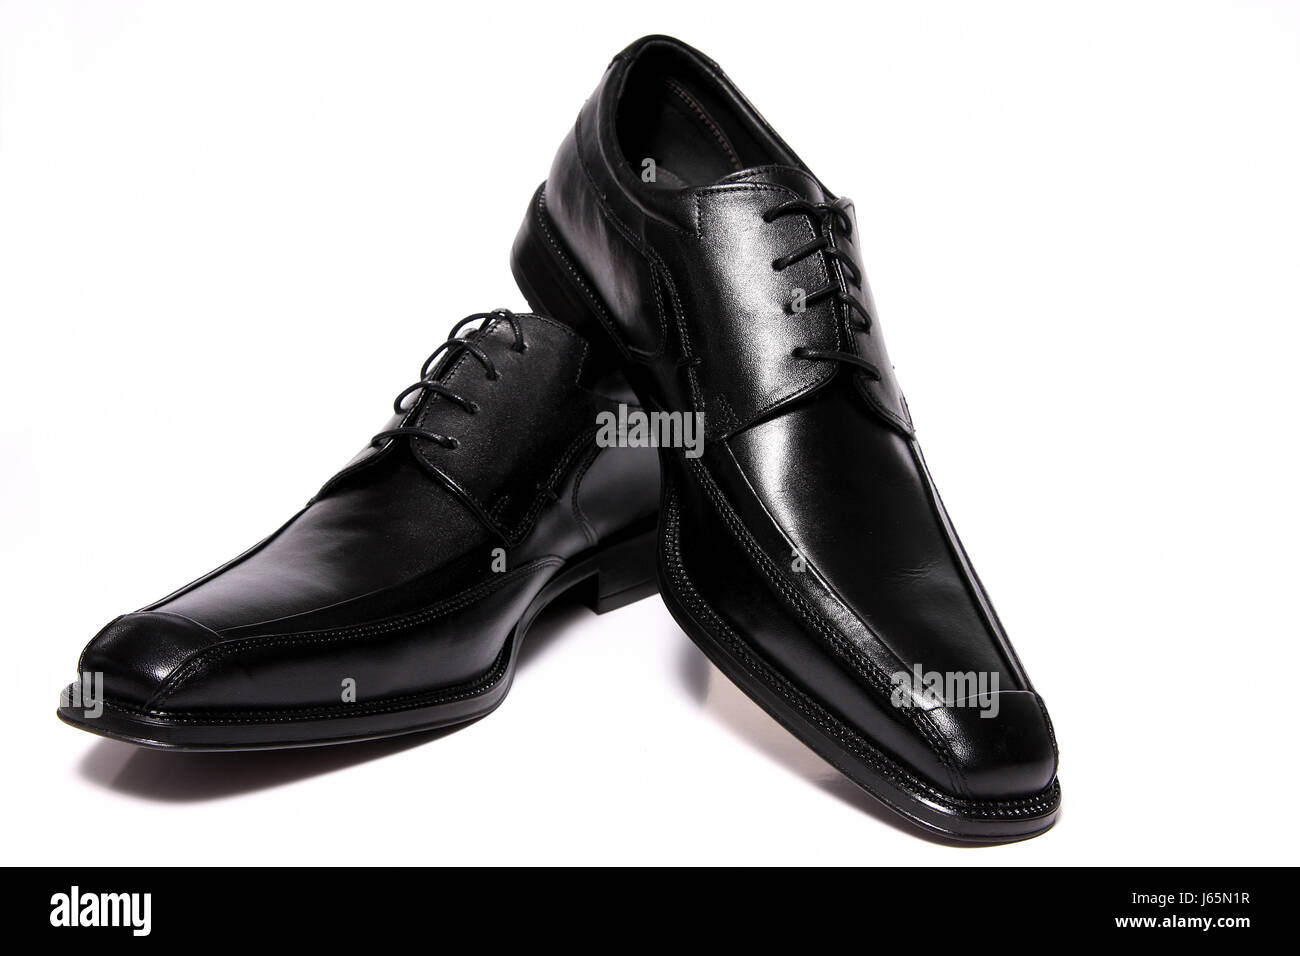 men's shoes Stock Photo